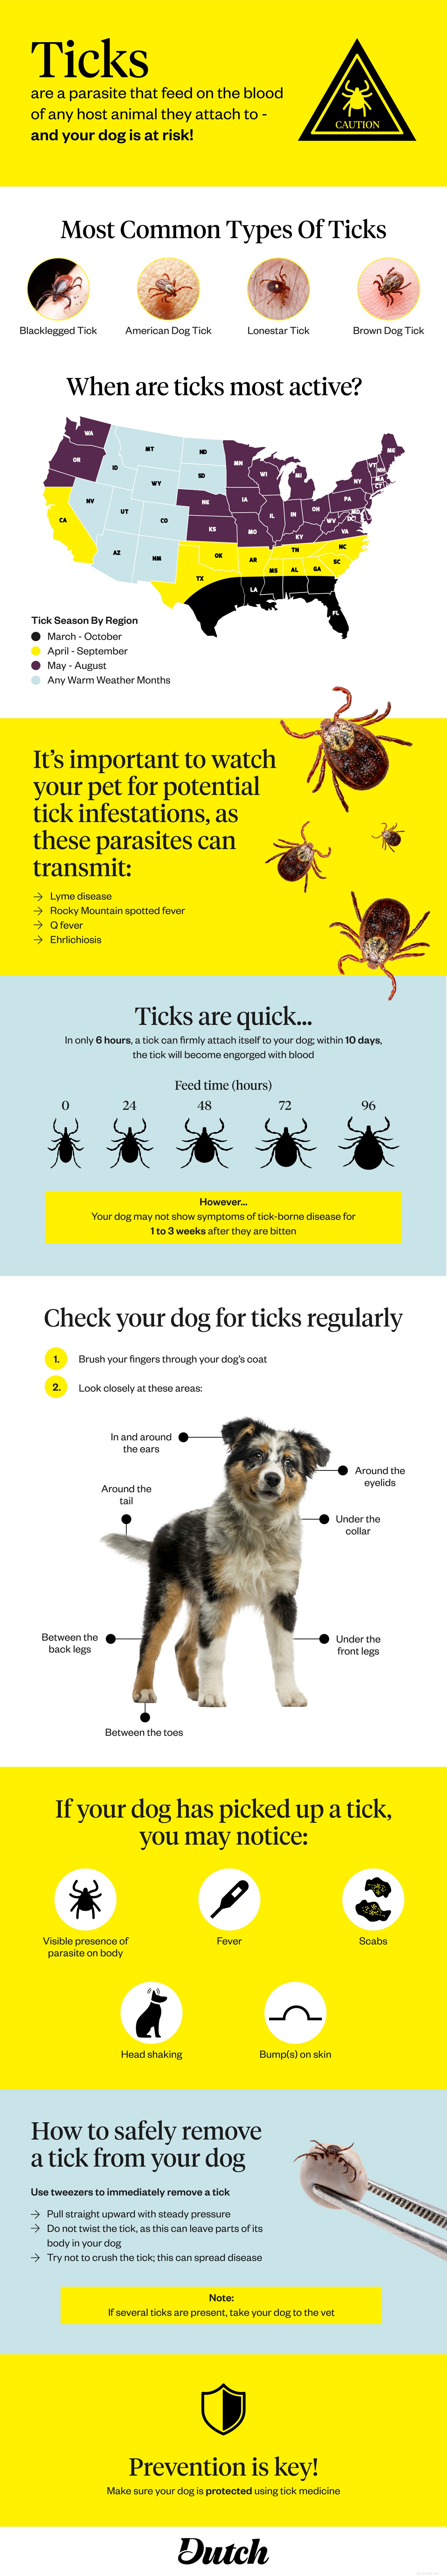 Les tiques sur les chiens :comment rechercher et éliminer les tiques